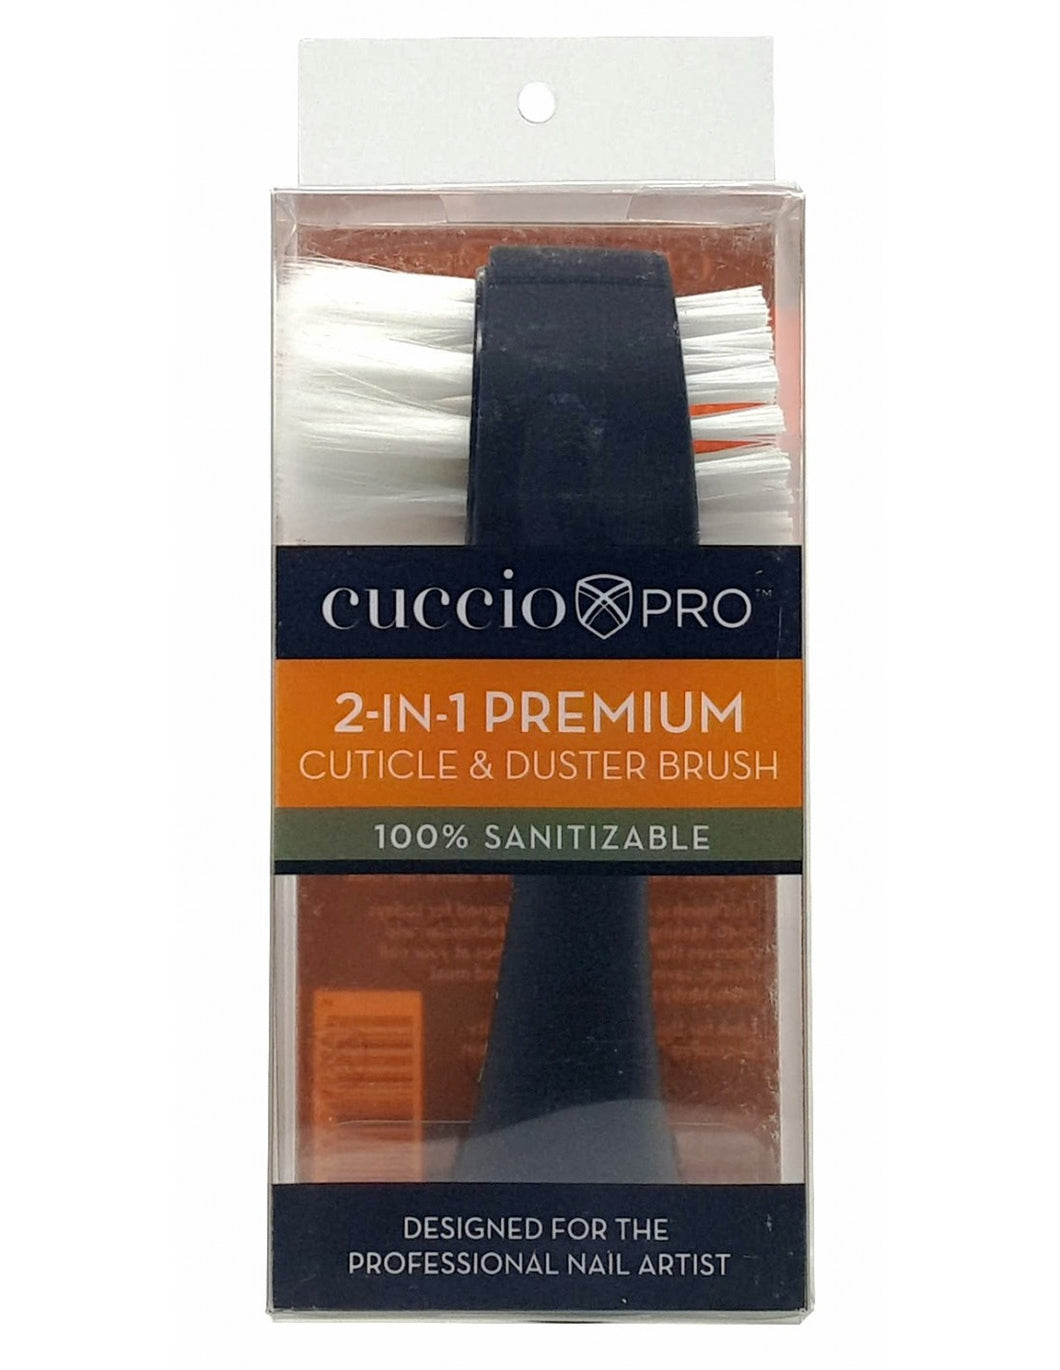 Cuccio Pro Dual Cuticle & Duster Brush